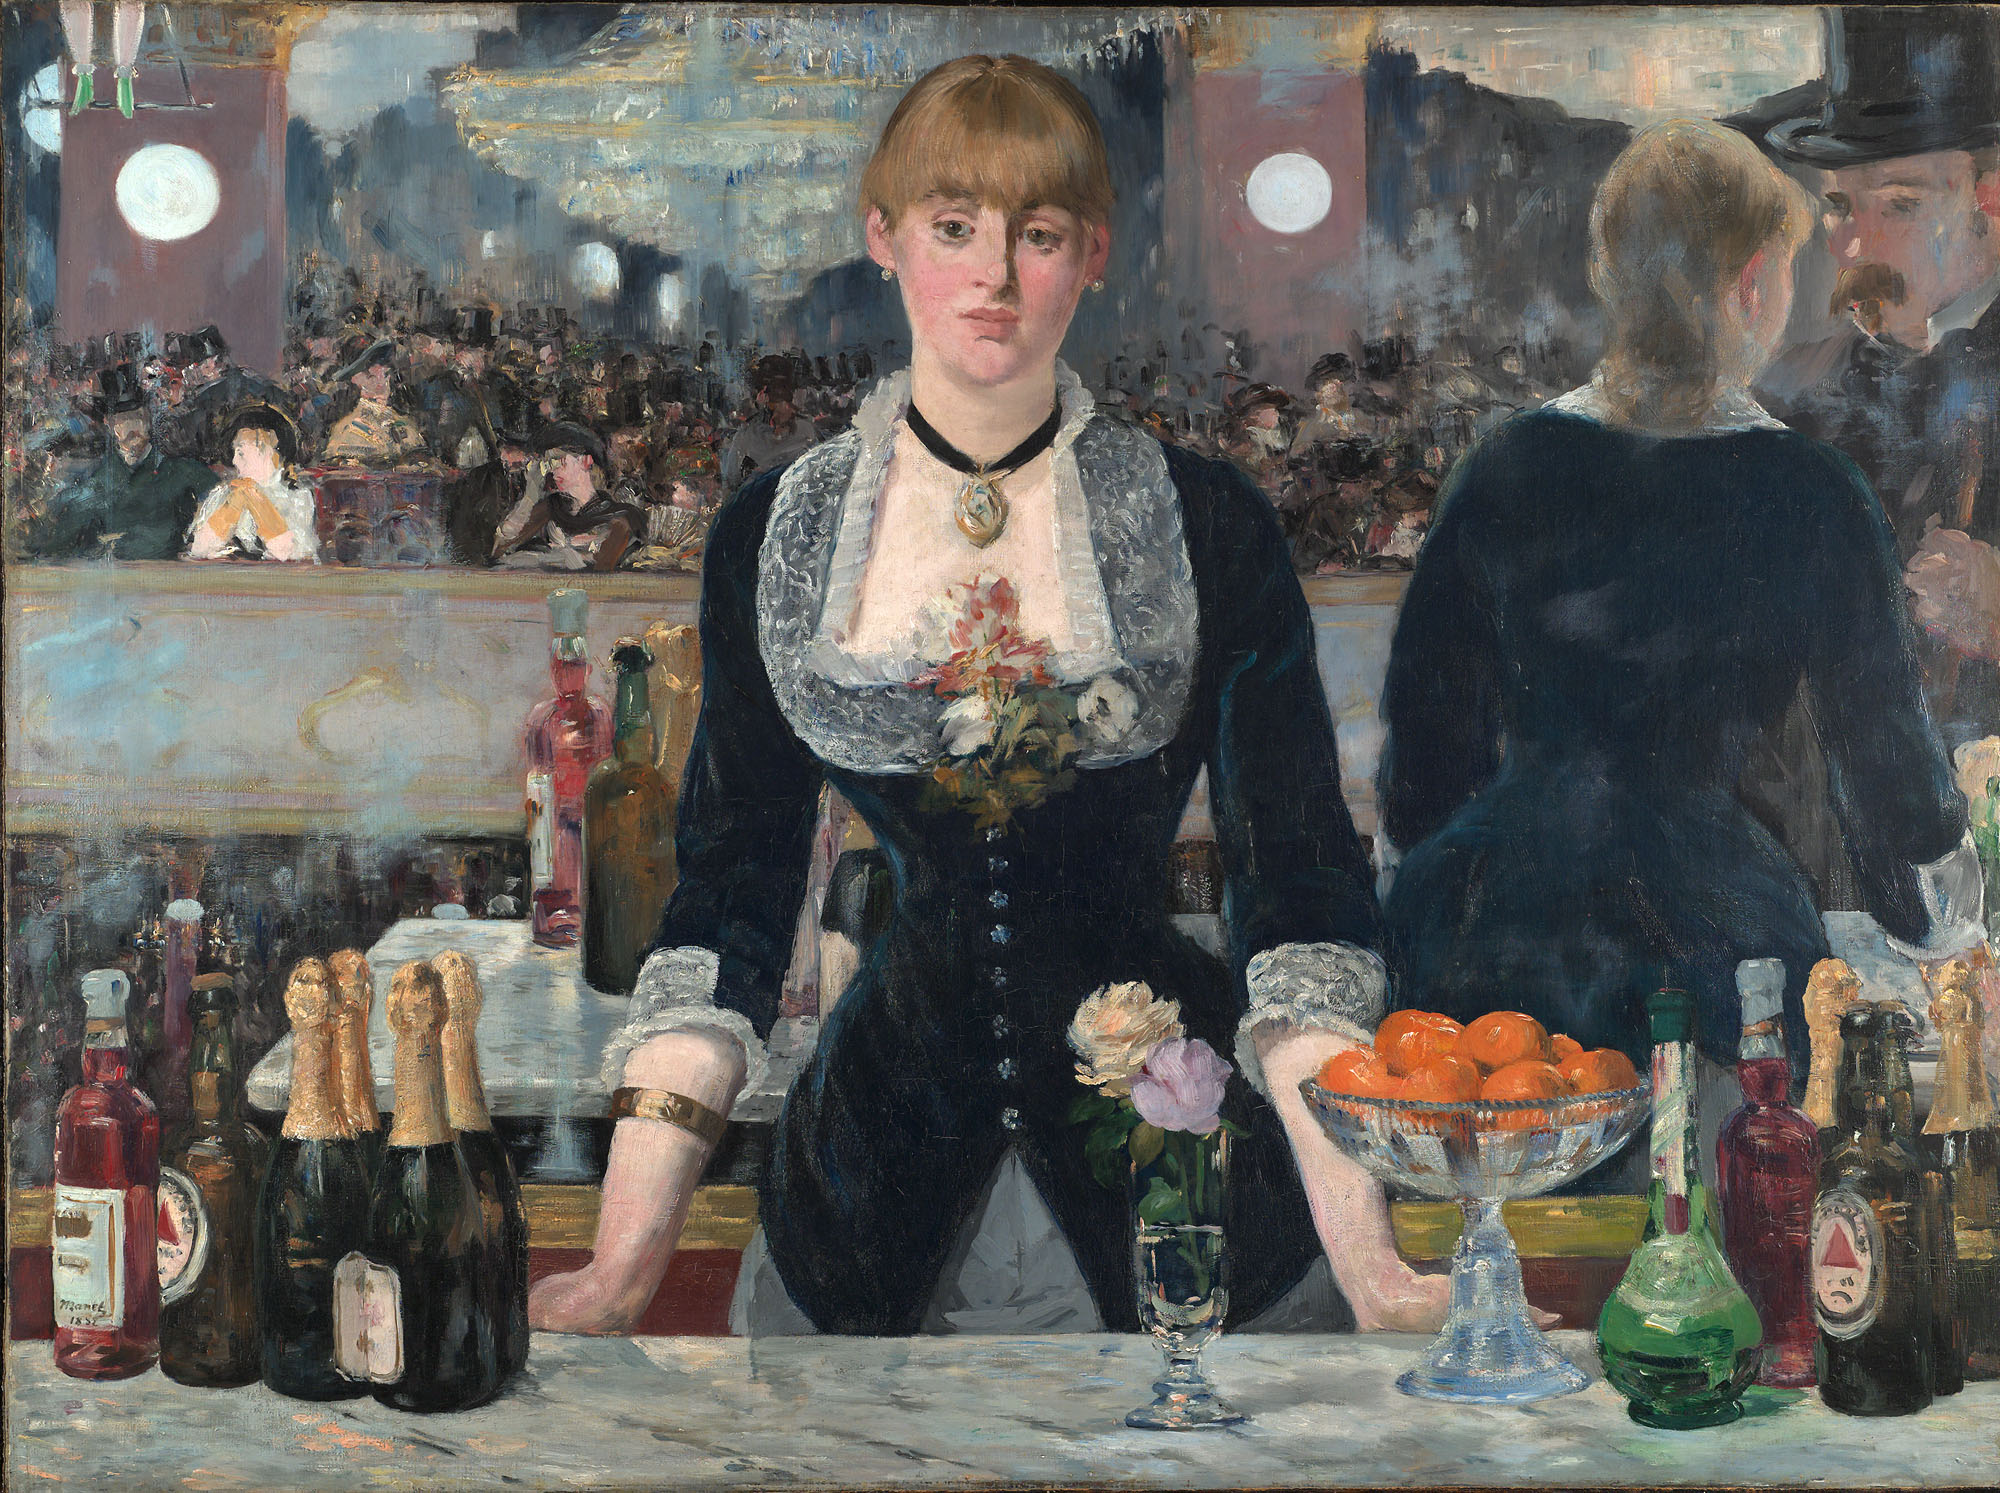 Bar en el Folies Bergère by Édouard Manet - 1882-1882 - 96 x 130 cm The Courtauld Gallery